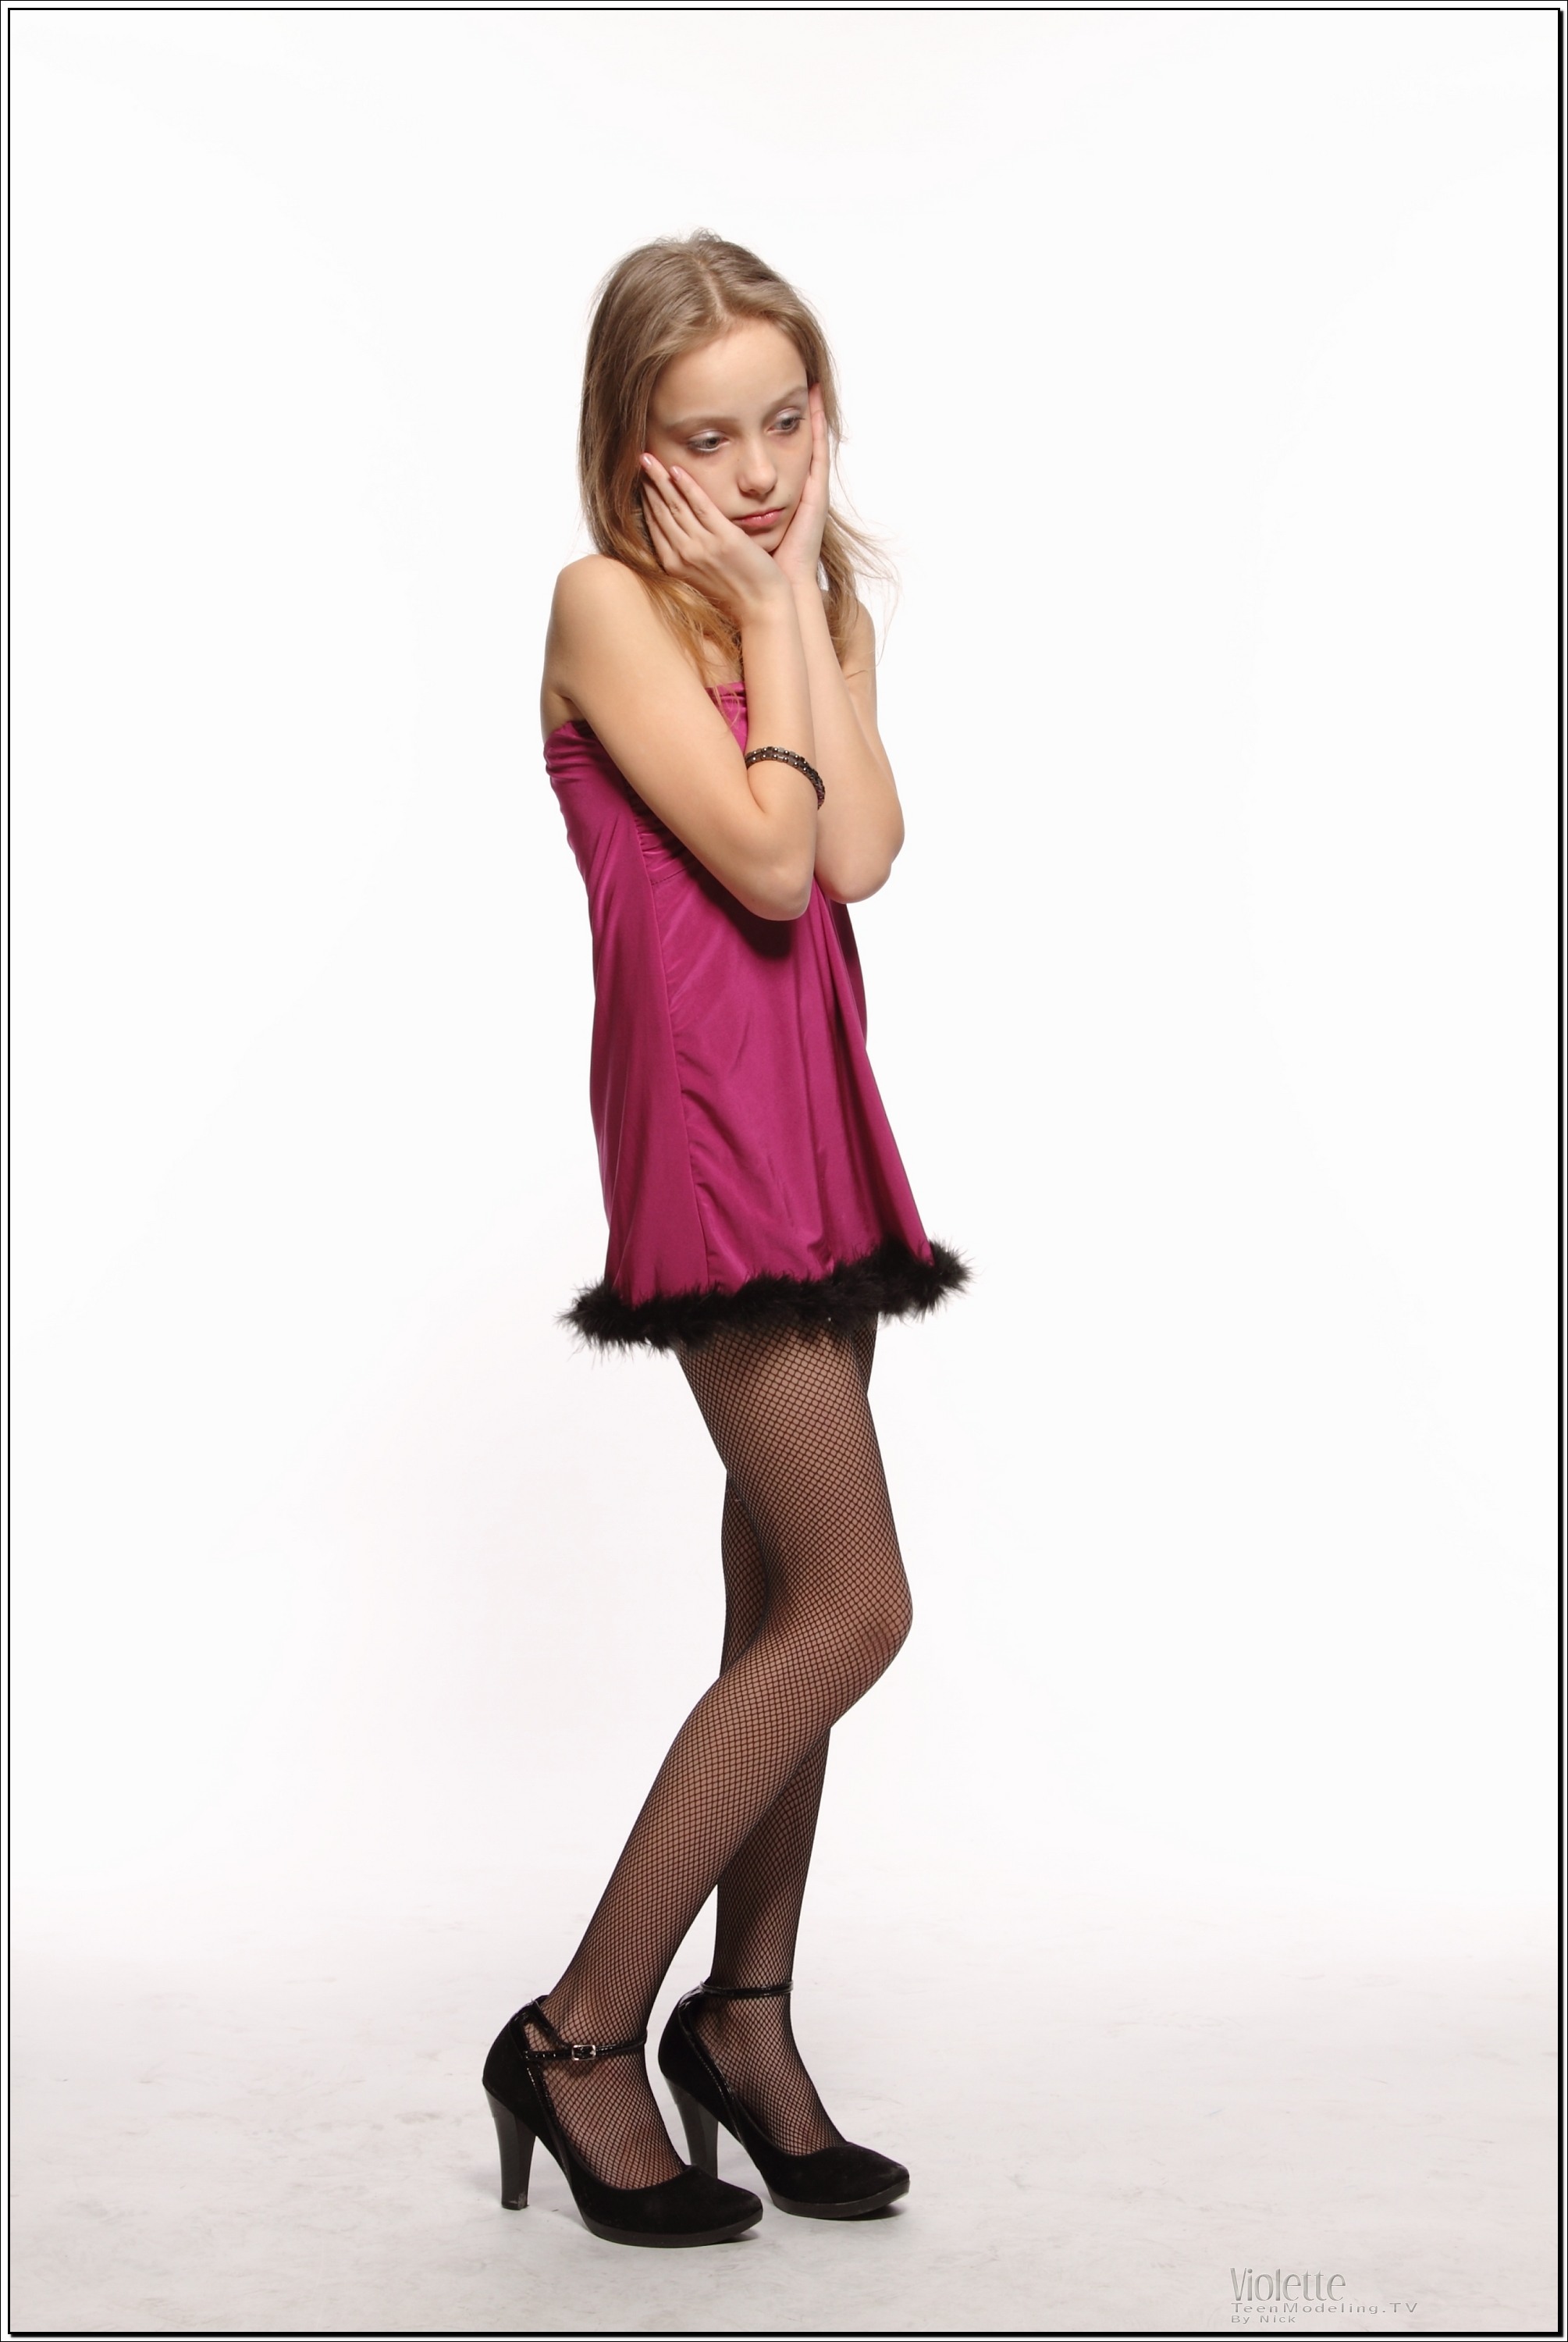 violette_model_pinkhalter_teenmodeling_tv_036.jpg